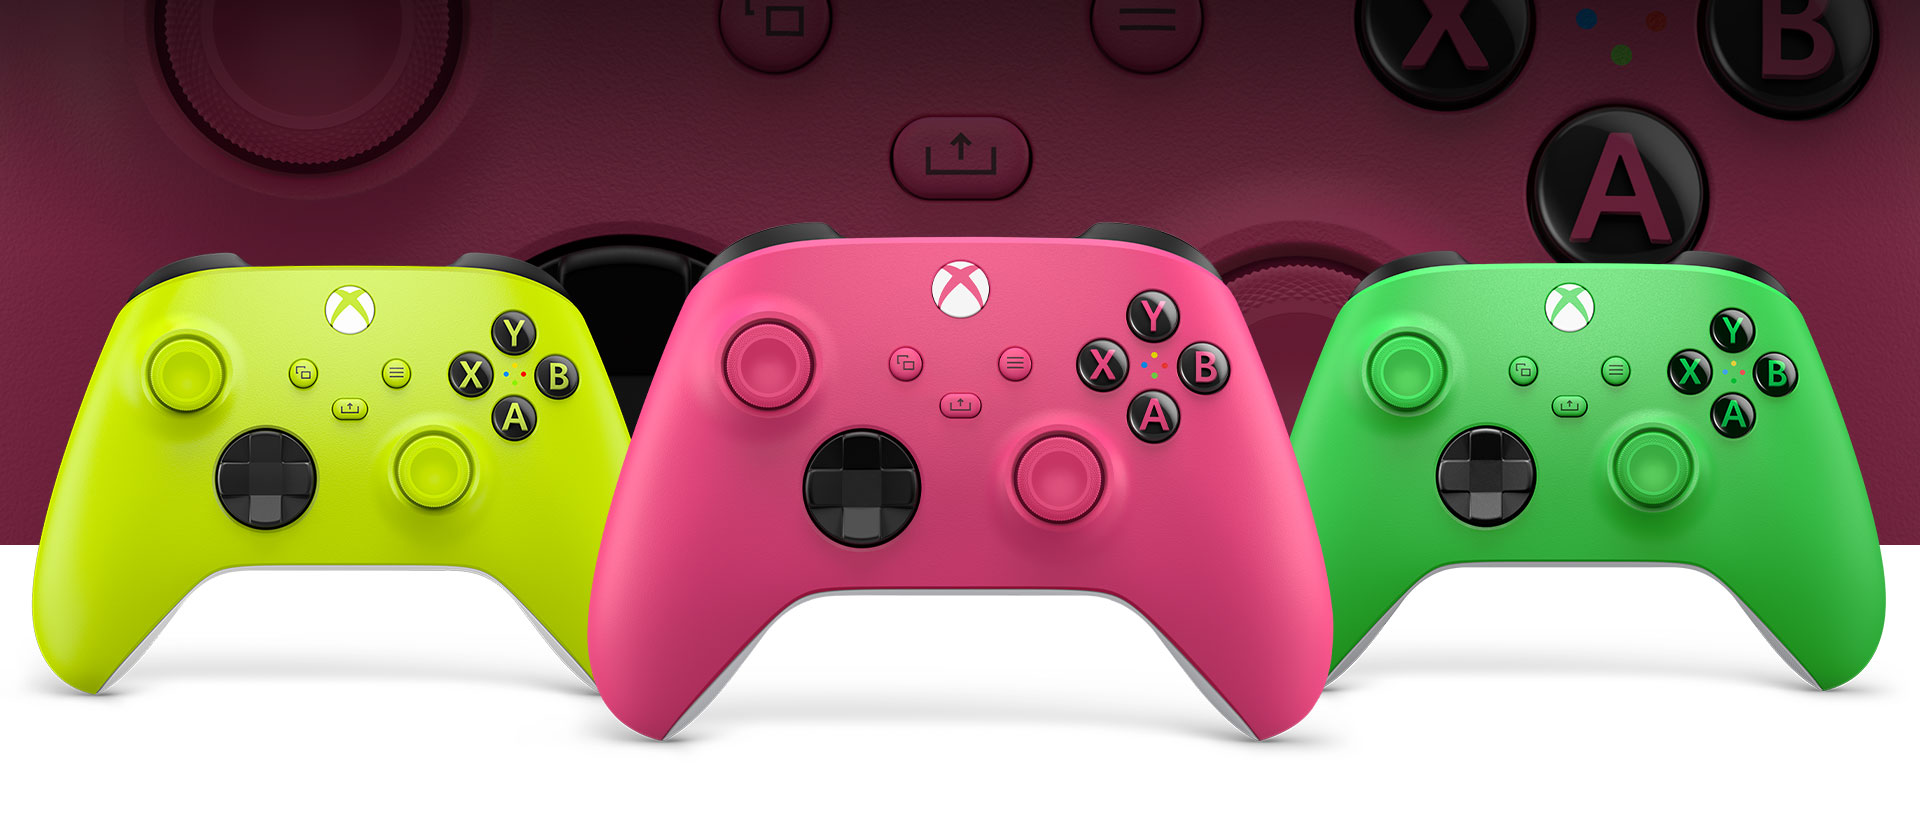 正面是 Xbox 粉色控制器，左边是荧光绿，右边是绿色